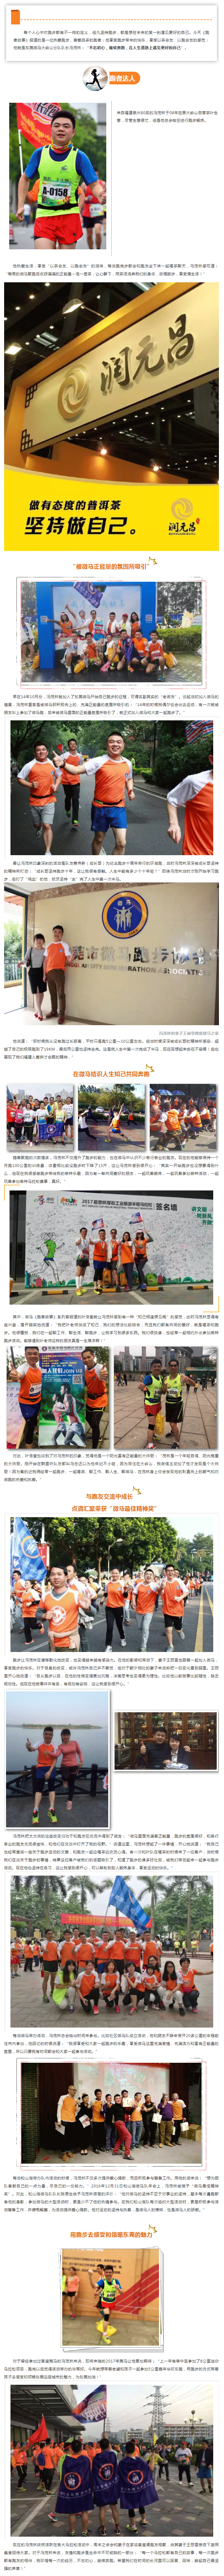 跑者故事-_-冯茂林：在跑步路上遇见更好的自己.gif